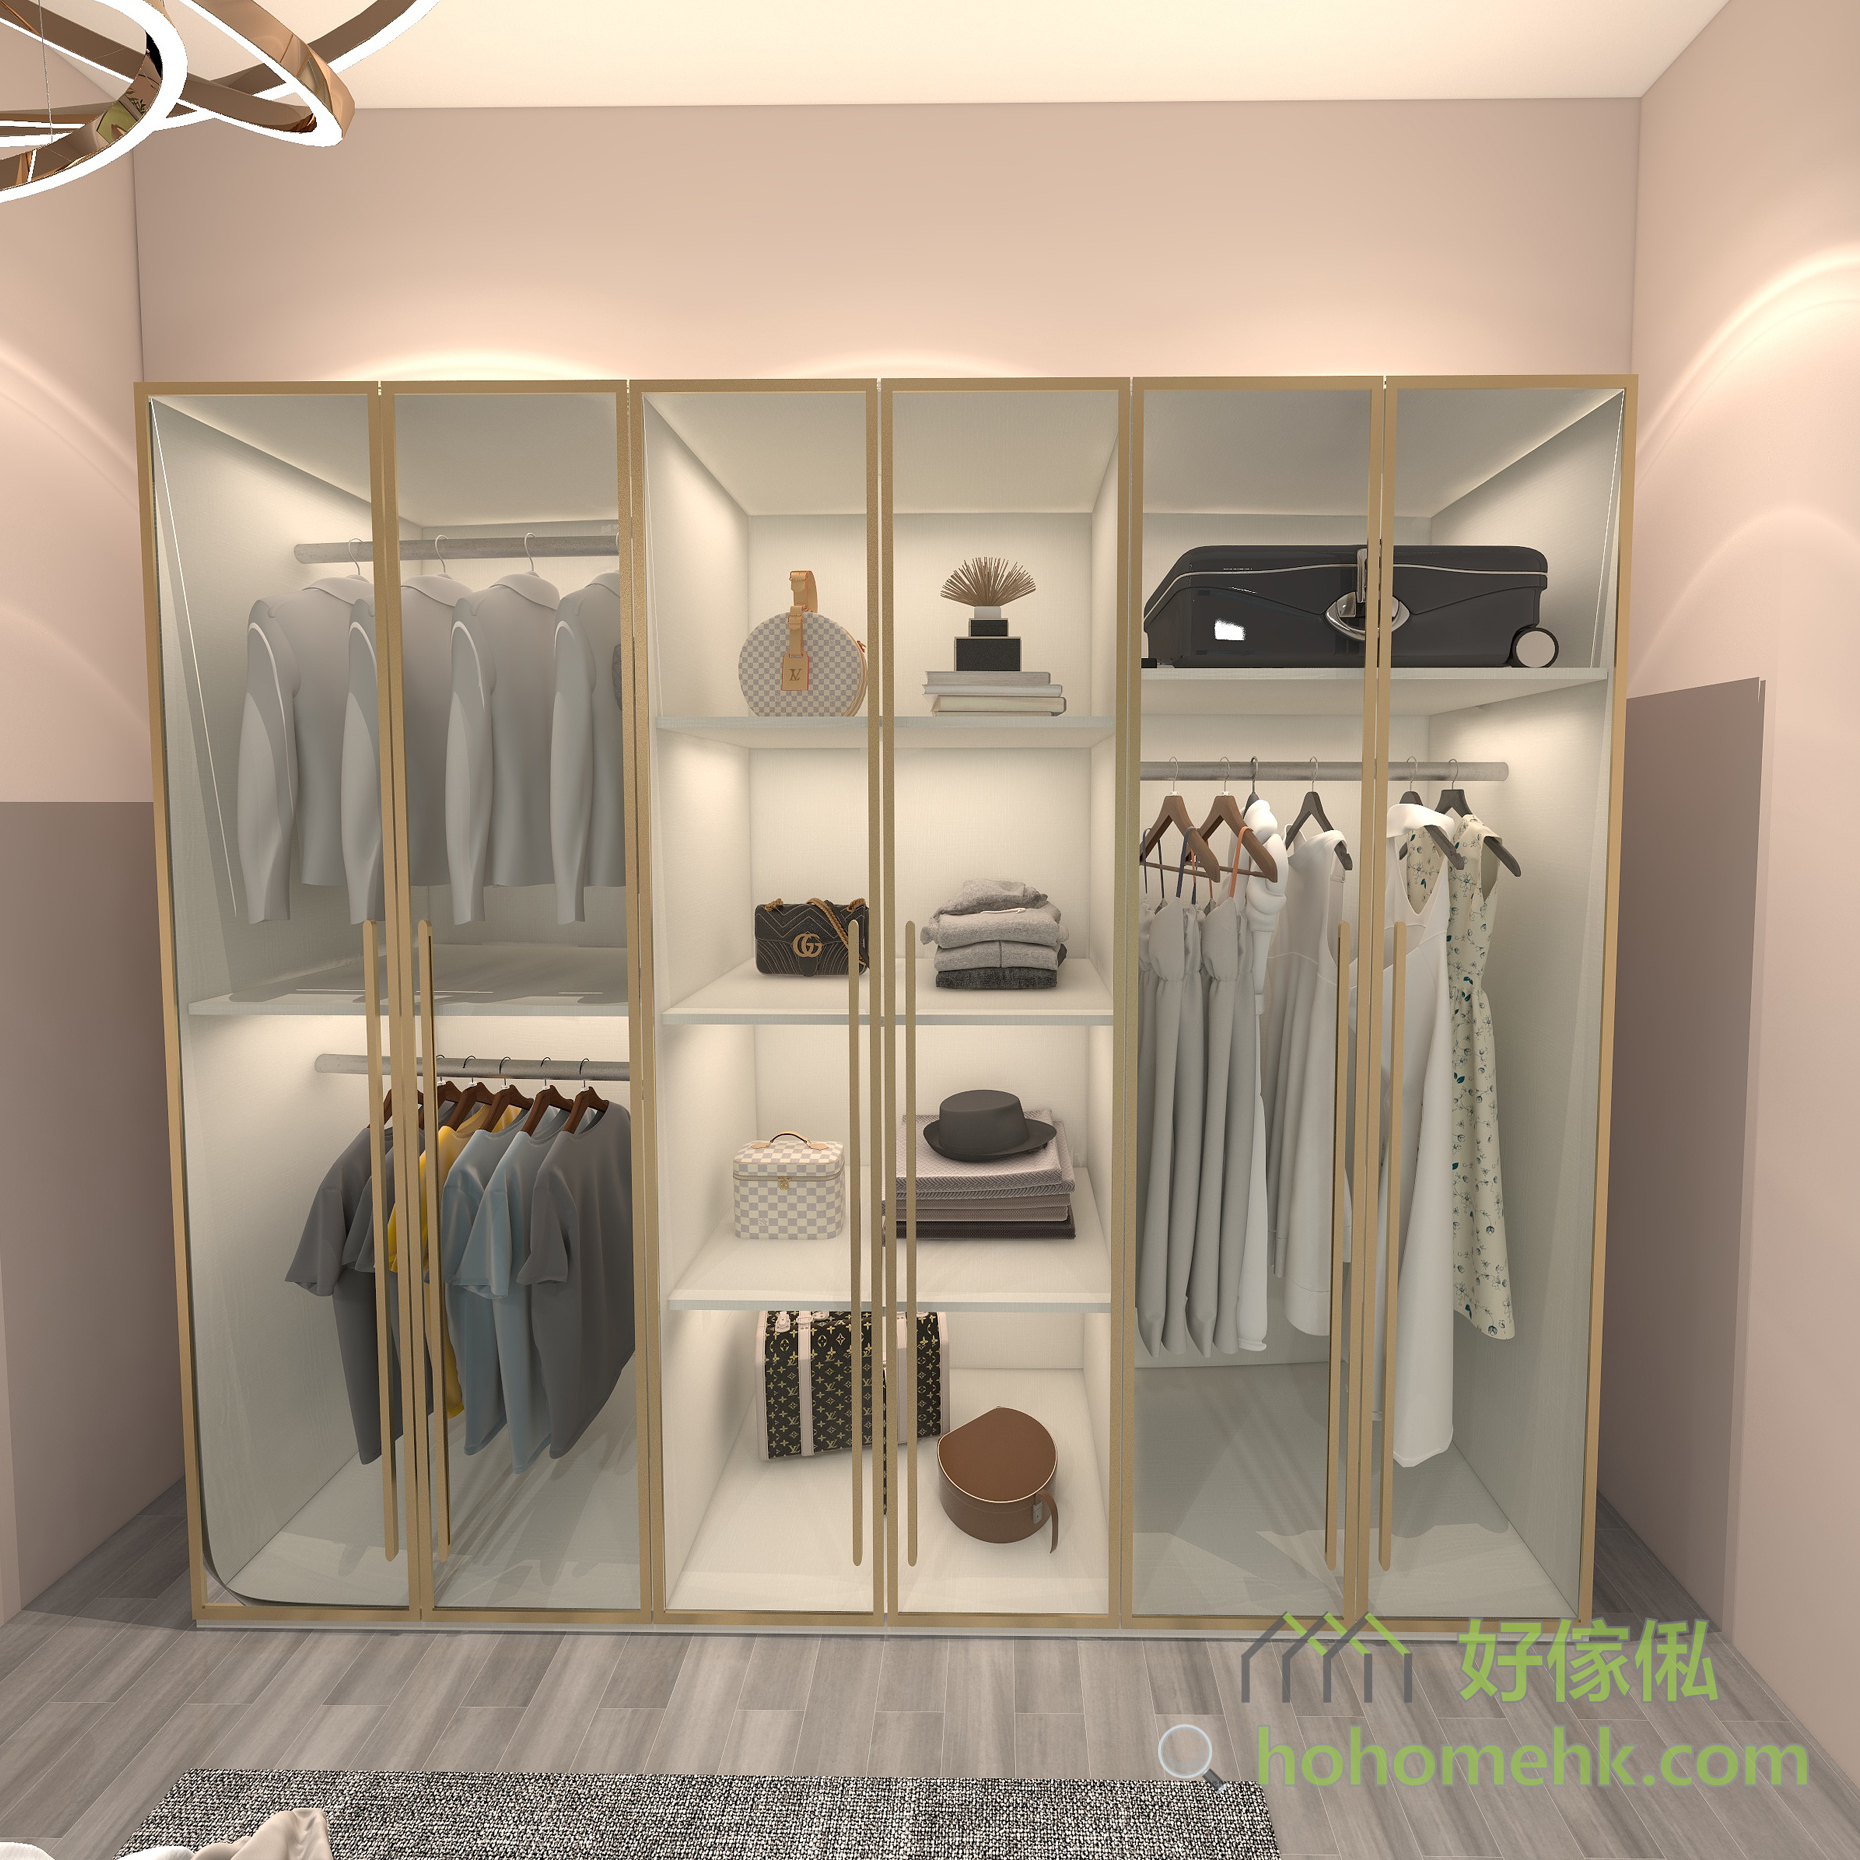 2門、3門、4門、5門和6門多種衣櫃規格，以層板區和掛衣區組成，方便收納不同類型的衣服。